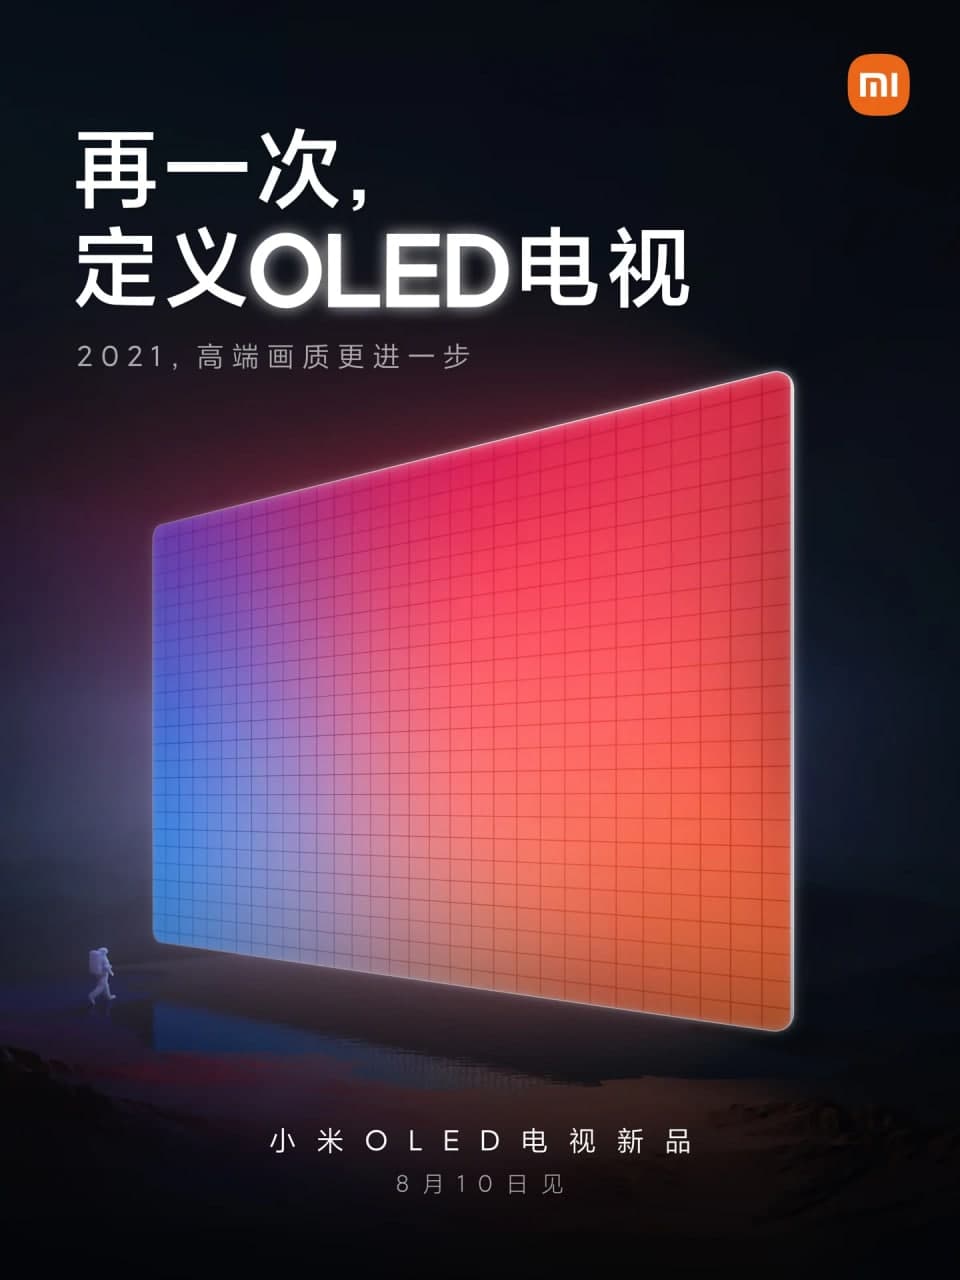 Mi QLED TV launch date